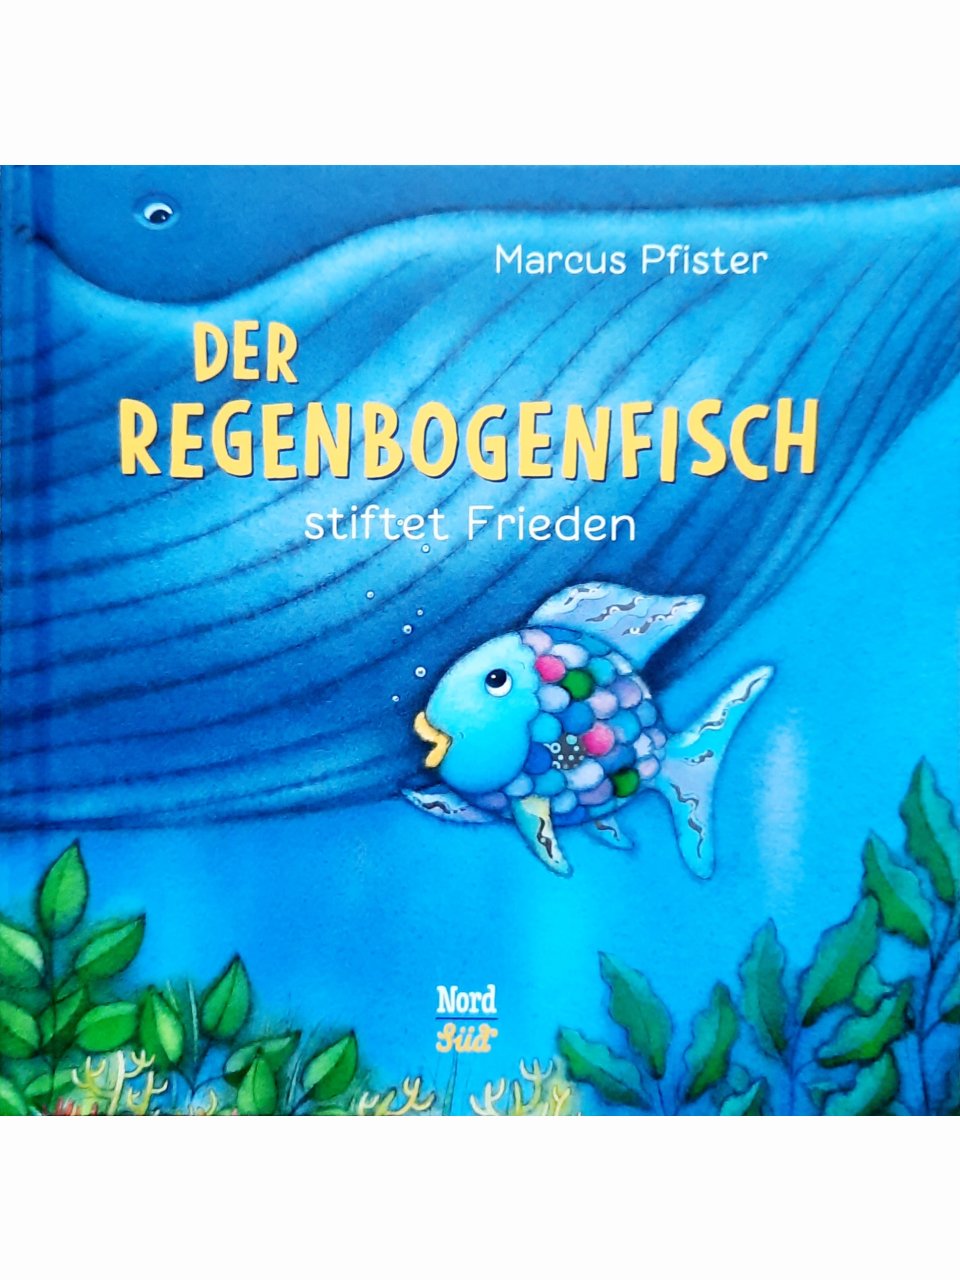 Der Regenbogenfisch stiftet Frieden (Kleinformat)